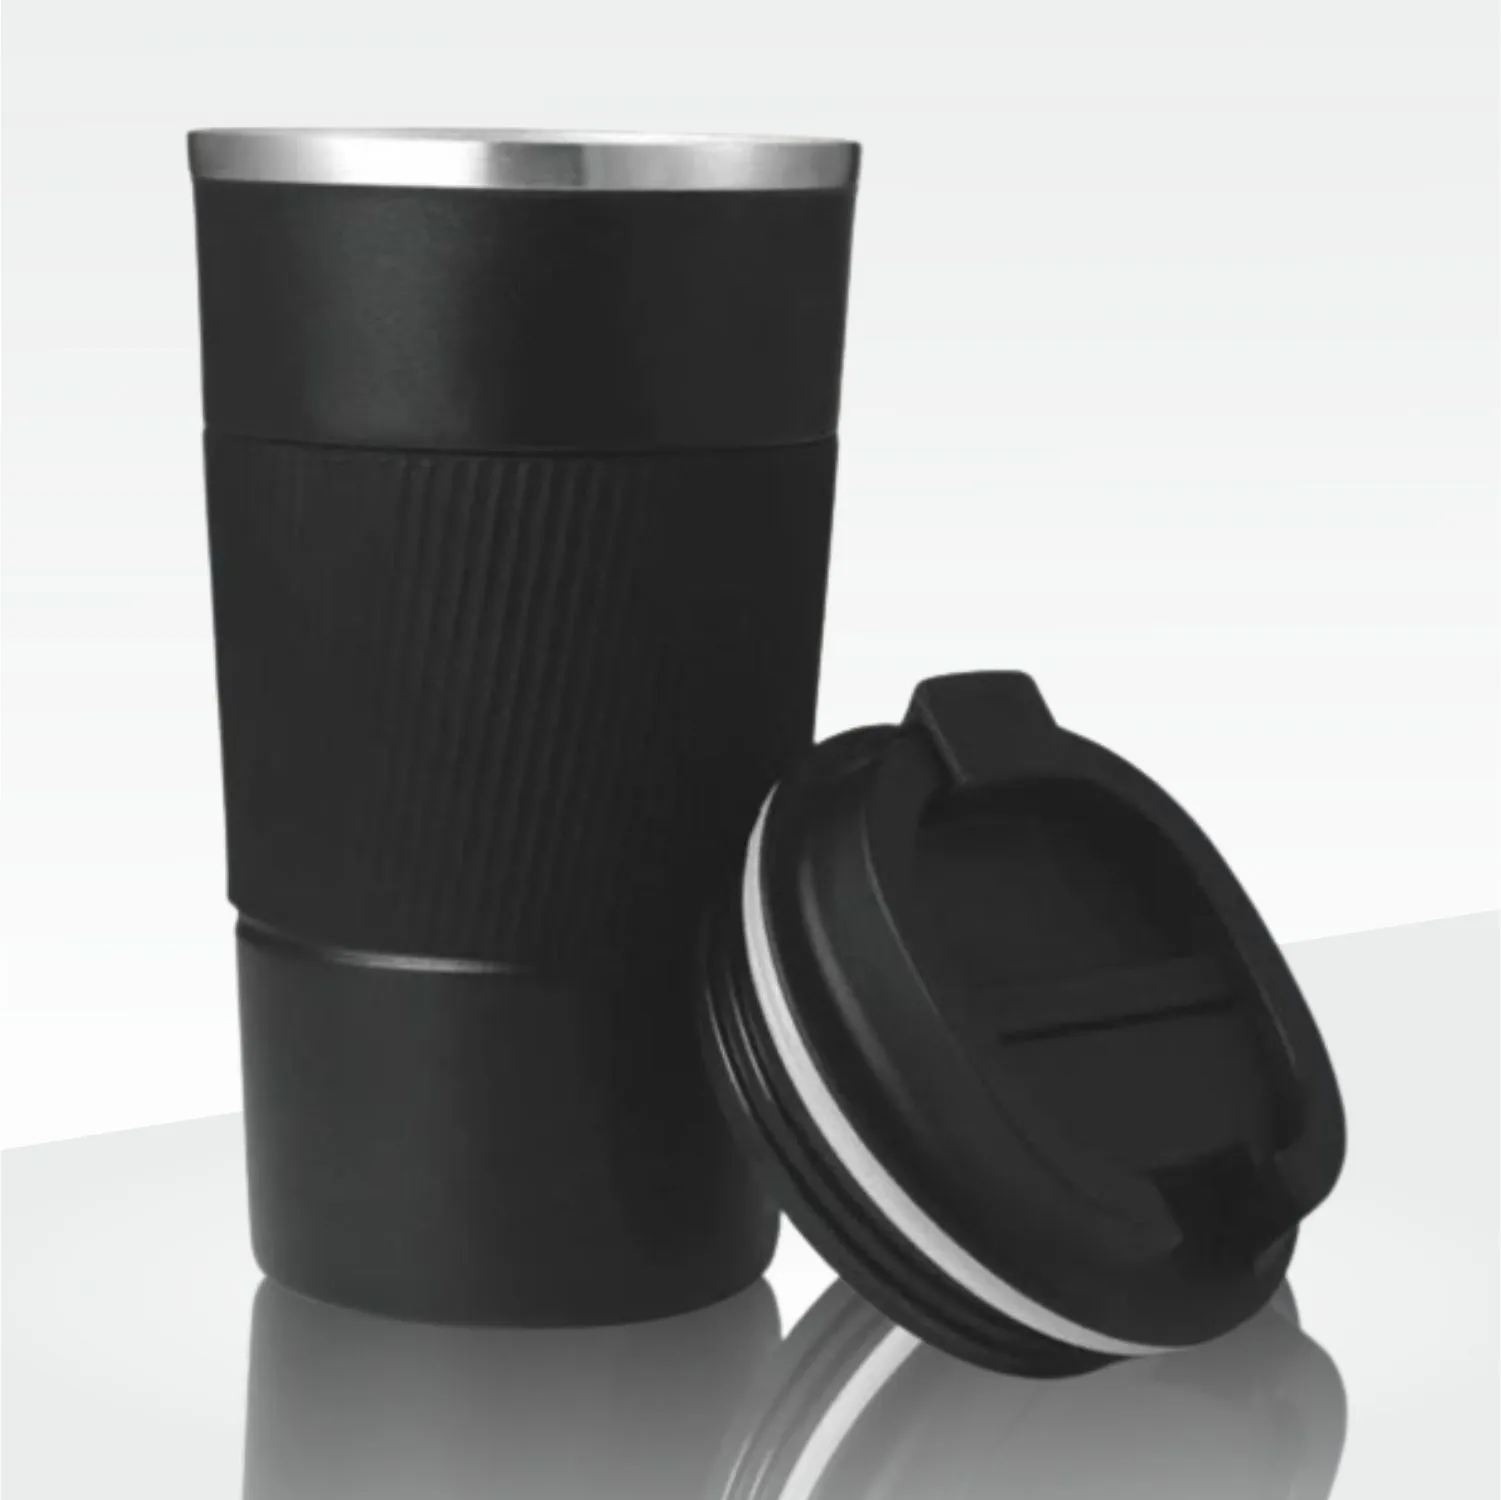 Premia+ Glass mug with Silicon Grip